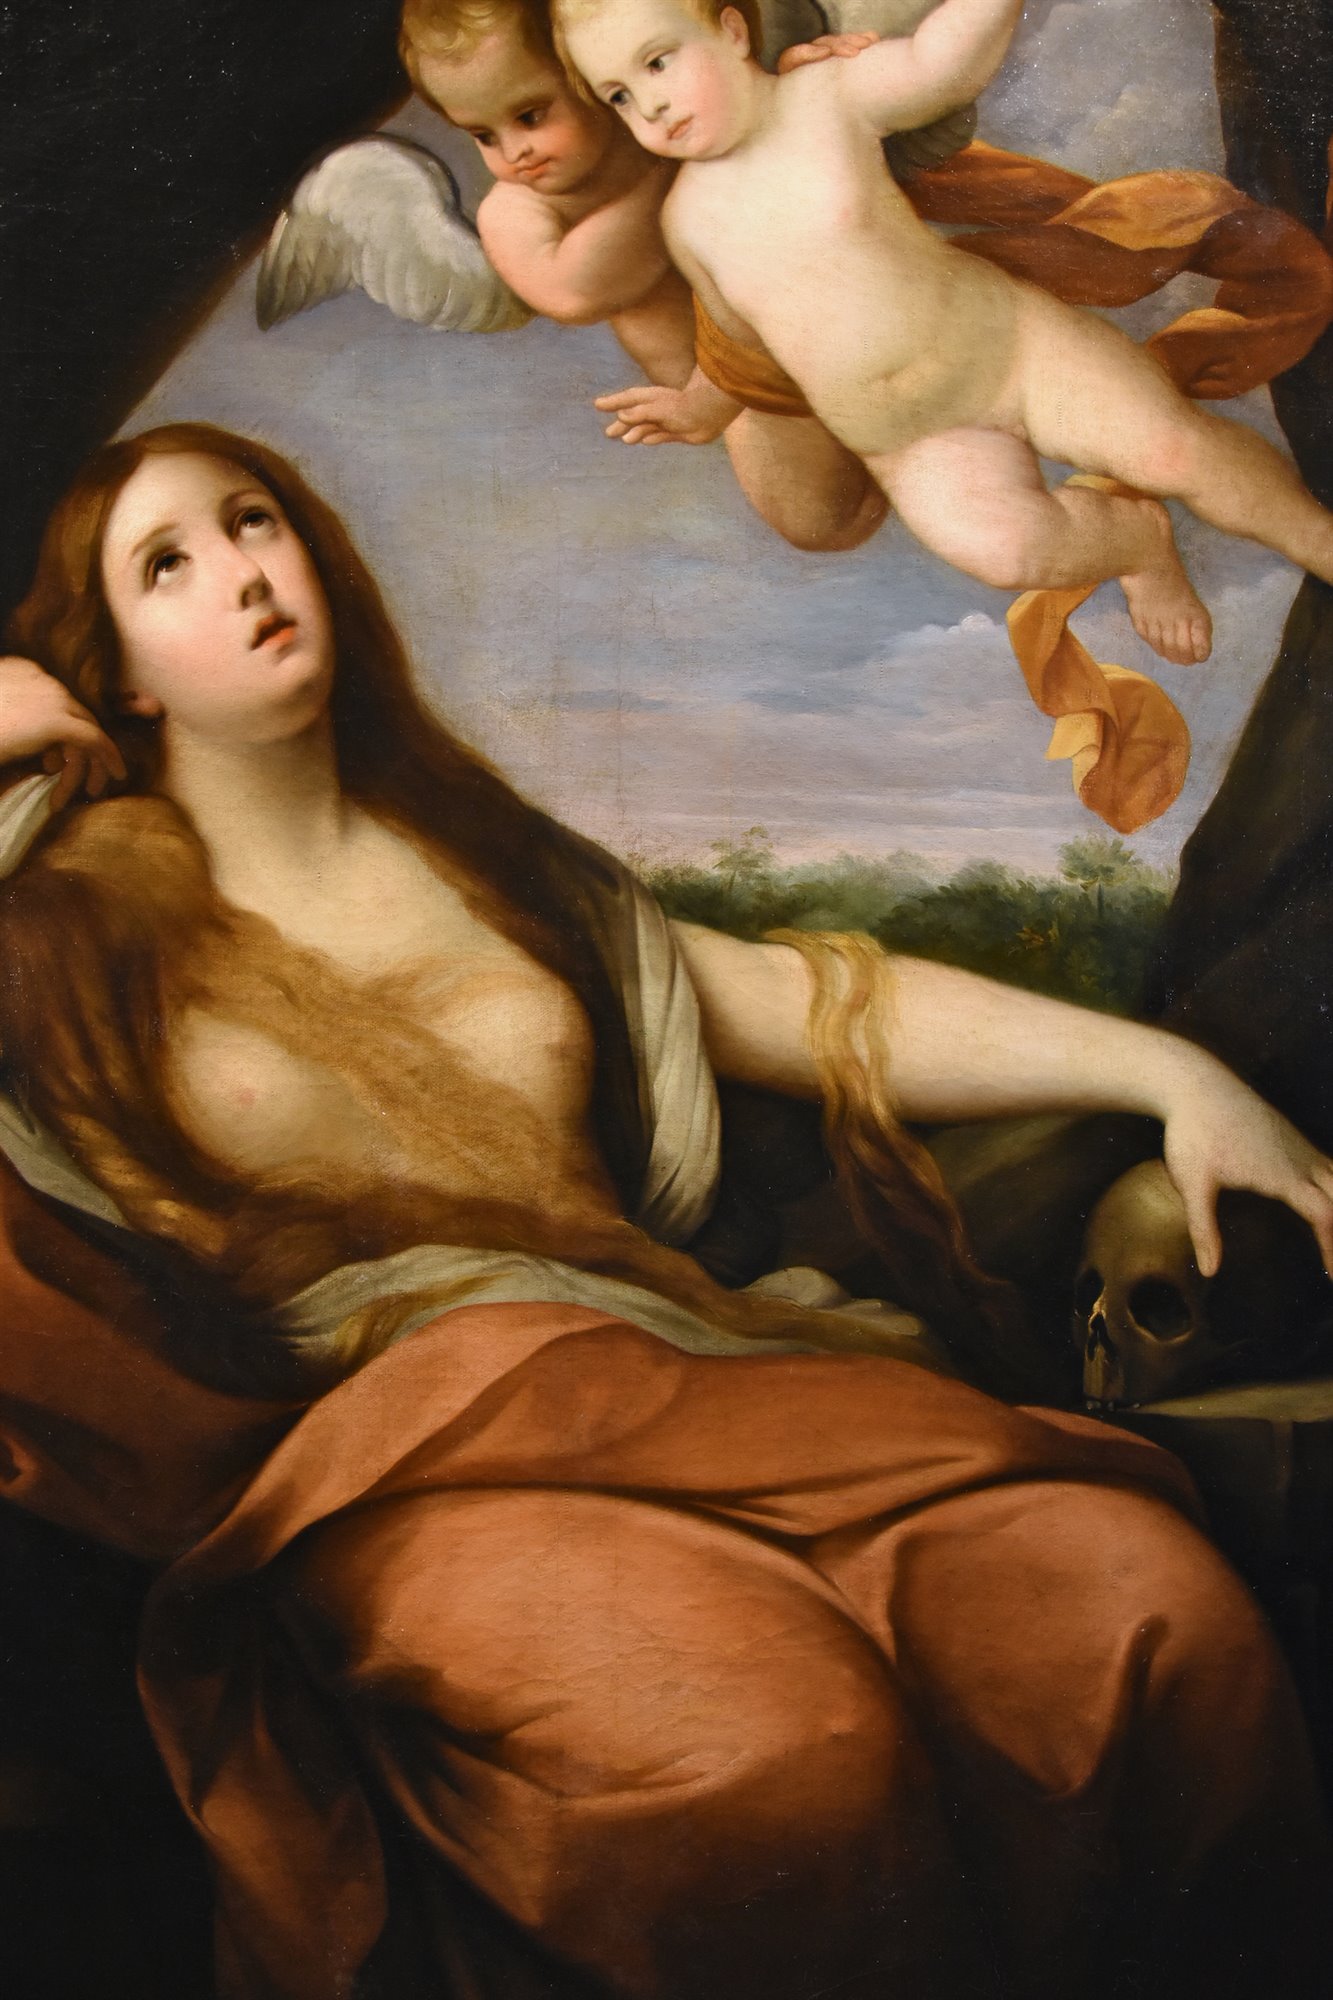 Maria Maddalena penitente